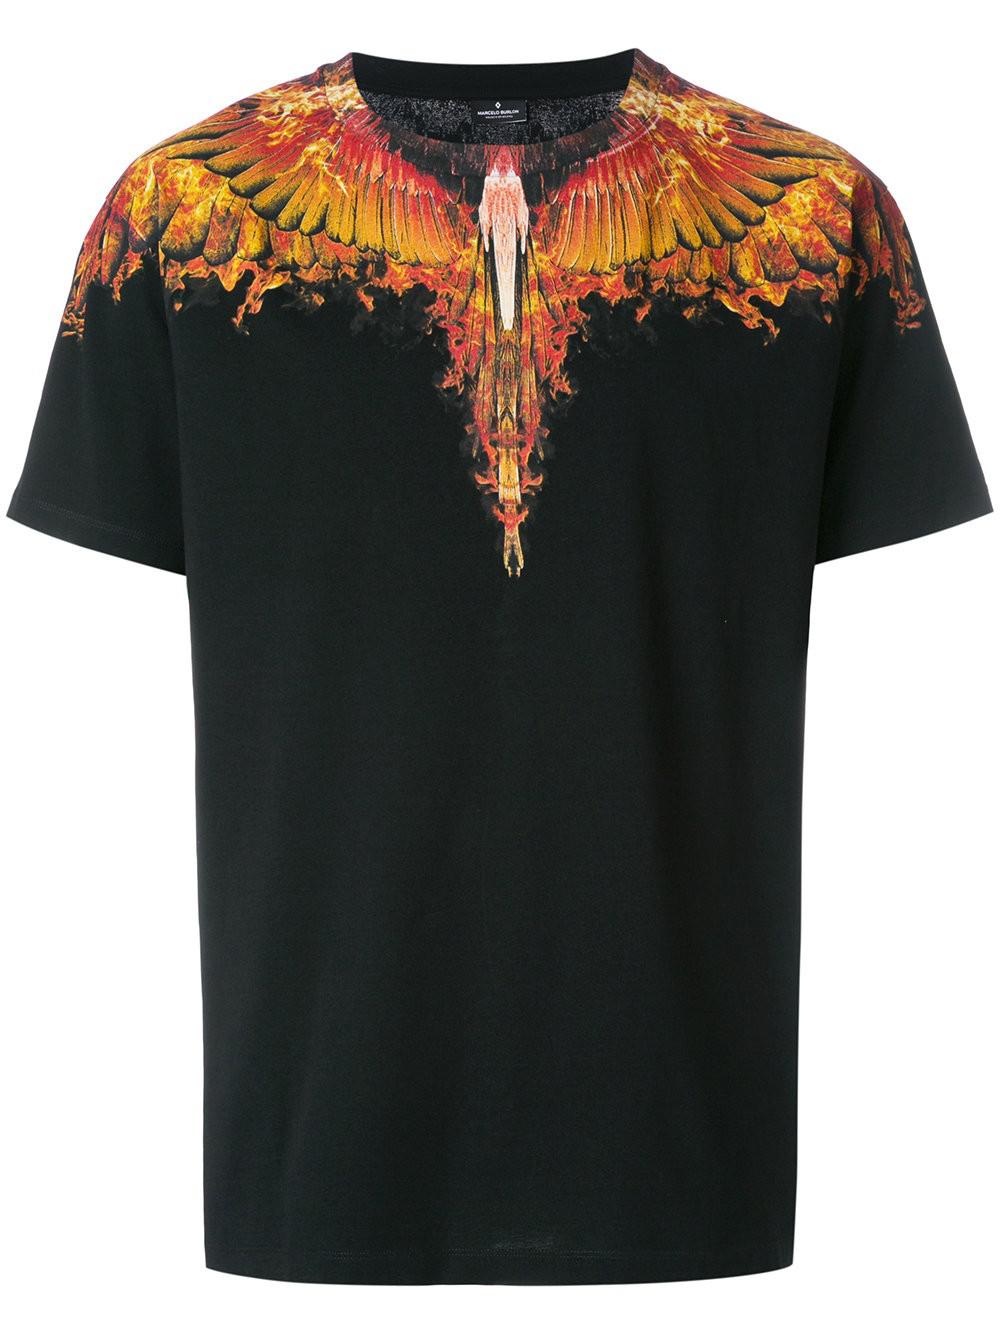 Lyst - Marcelo Burlon Flames Wings T-shirt in Black for Men